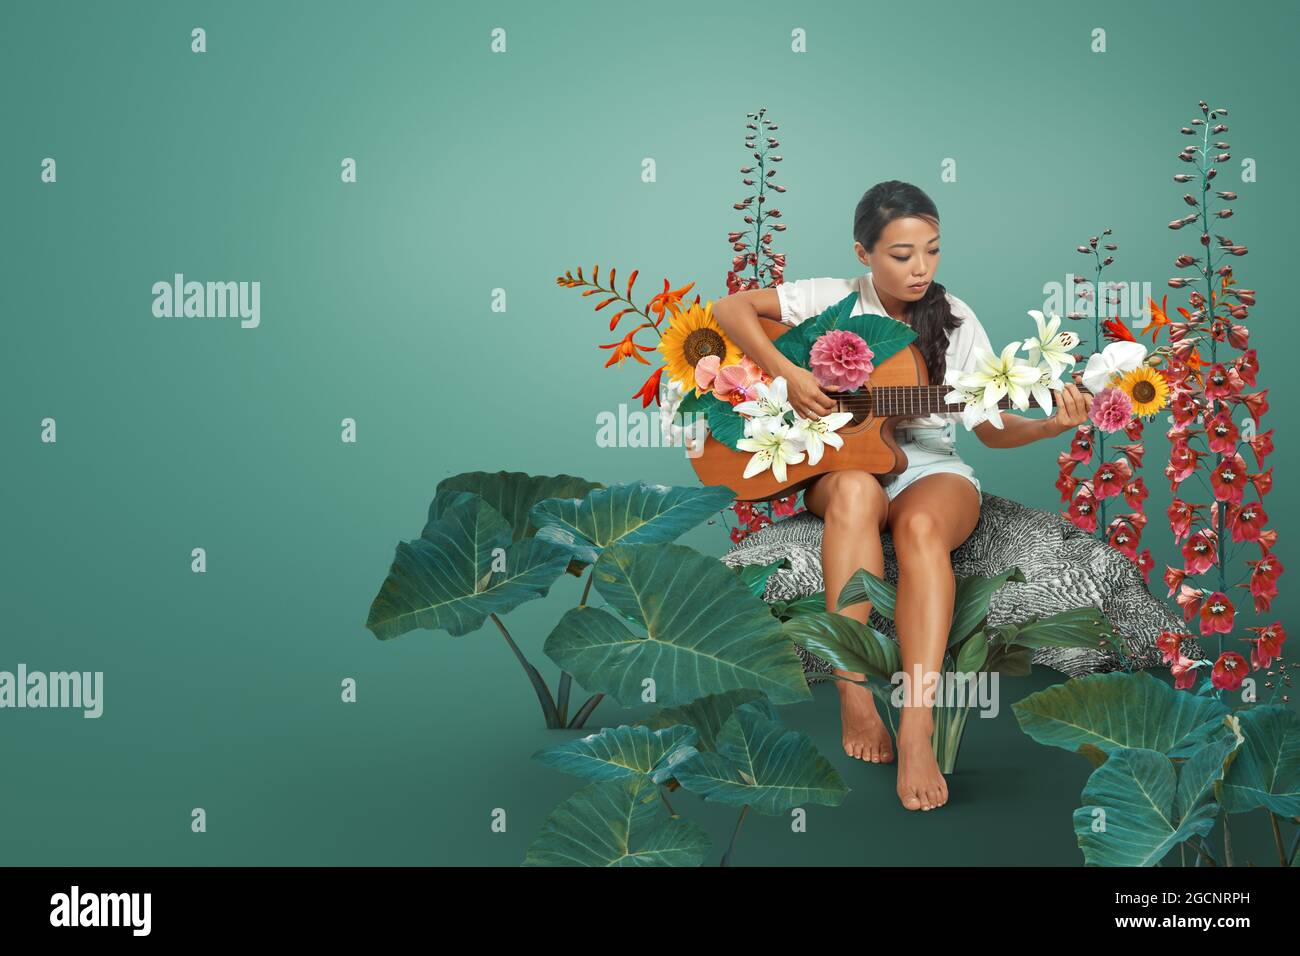 Arte abstracto retrato compuesto de una joven tocando la guitarra con hermosas flores alrededor de ella Foto de stock